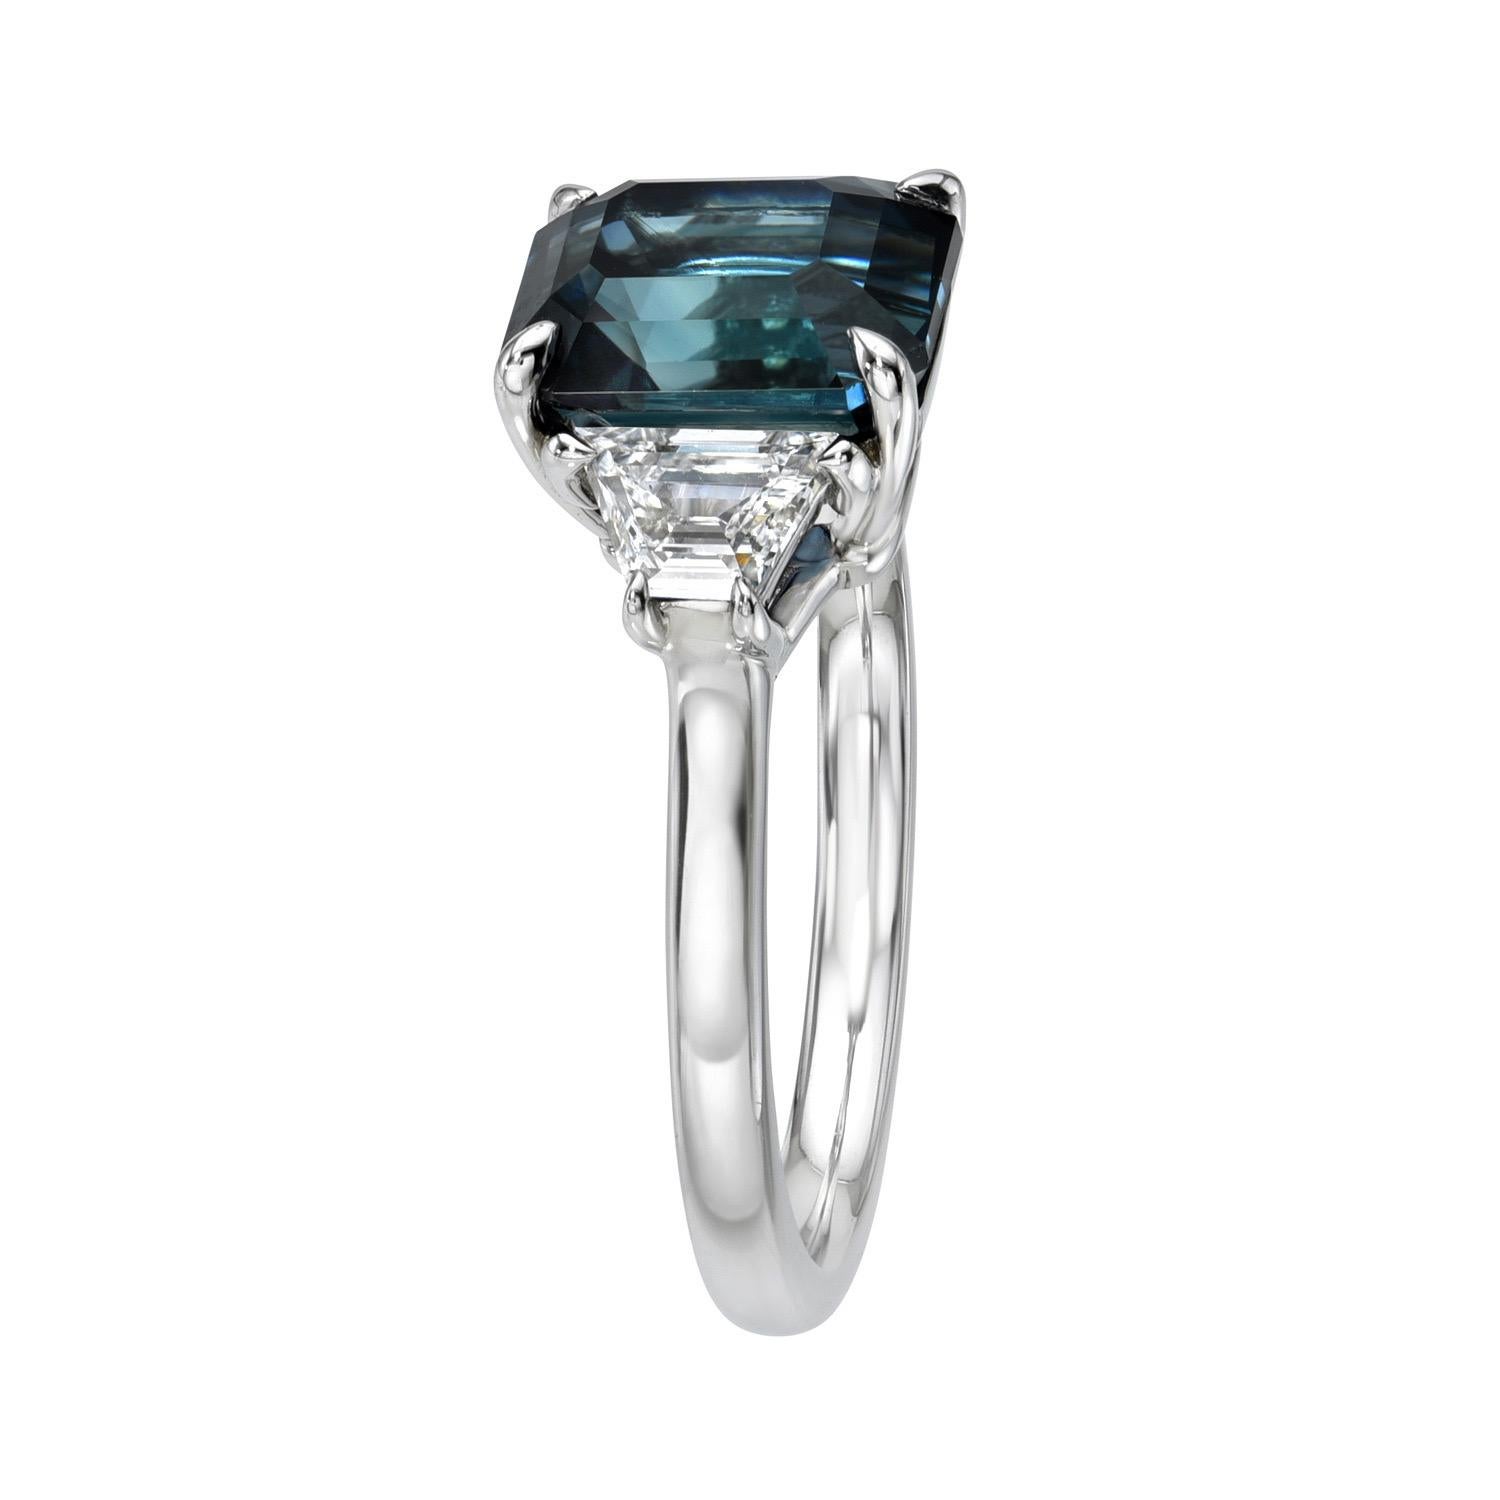 Einzigartiger und exotischer Ceylon Teal Sapphire im Smaragdschliff mit 4,16 Karat und drei Steinen aus Platin, flankiert von einem Paar trapezförmiger Diamanten mit 0,57 Karat, D/VS2-SI1.
Ring Größe 6. Die Größenänderung ist auf Anfrage